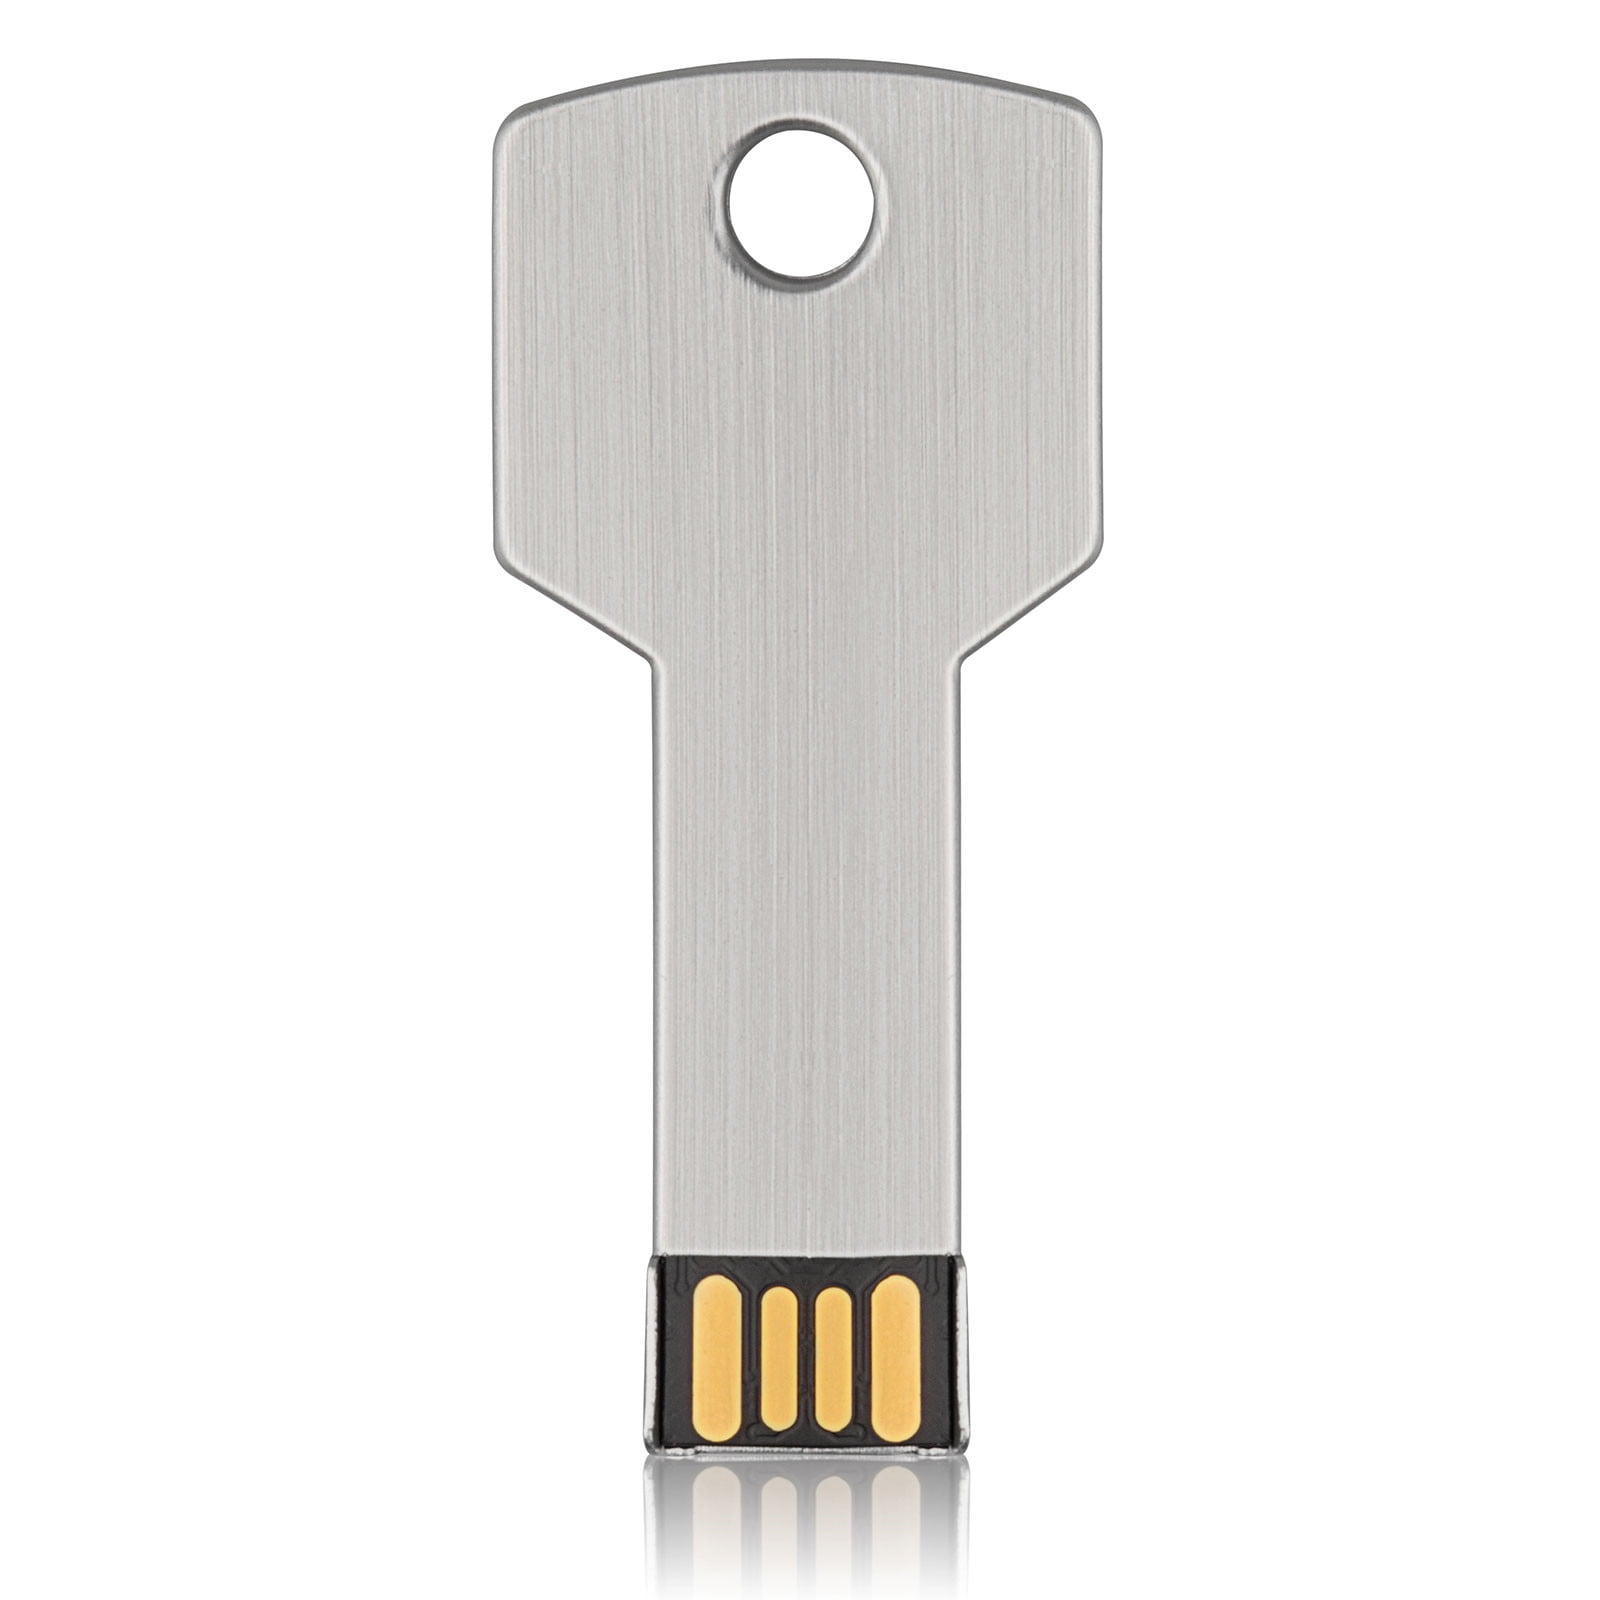 overdrive klimaks kokain 64GB 2.0 USB Flash Drive Key Shape for PC Laptop Computer TOPESEL Metal Thumb  Drive Pen Drive Memory Stick Silver - Walmart.com